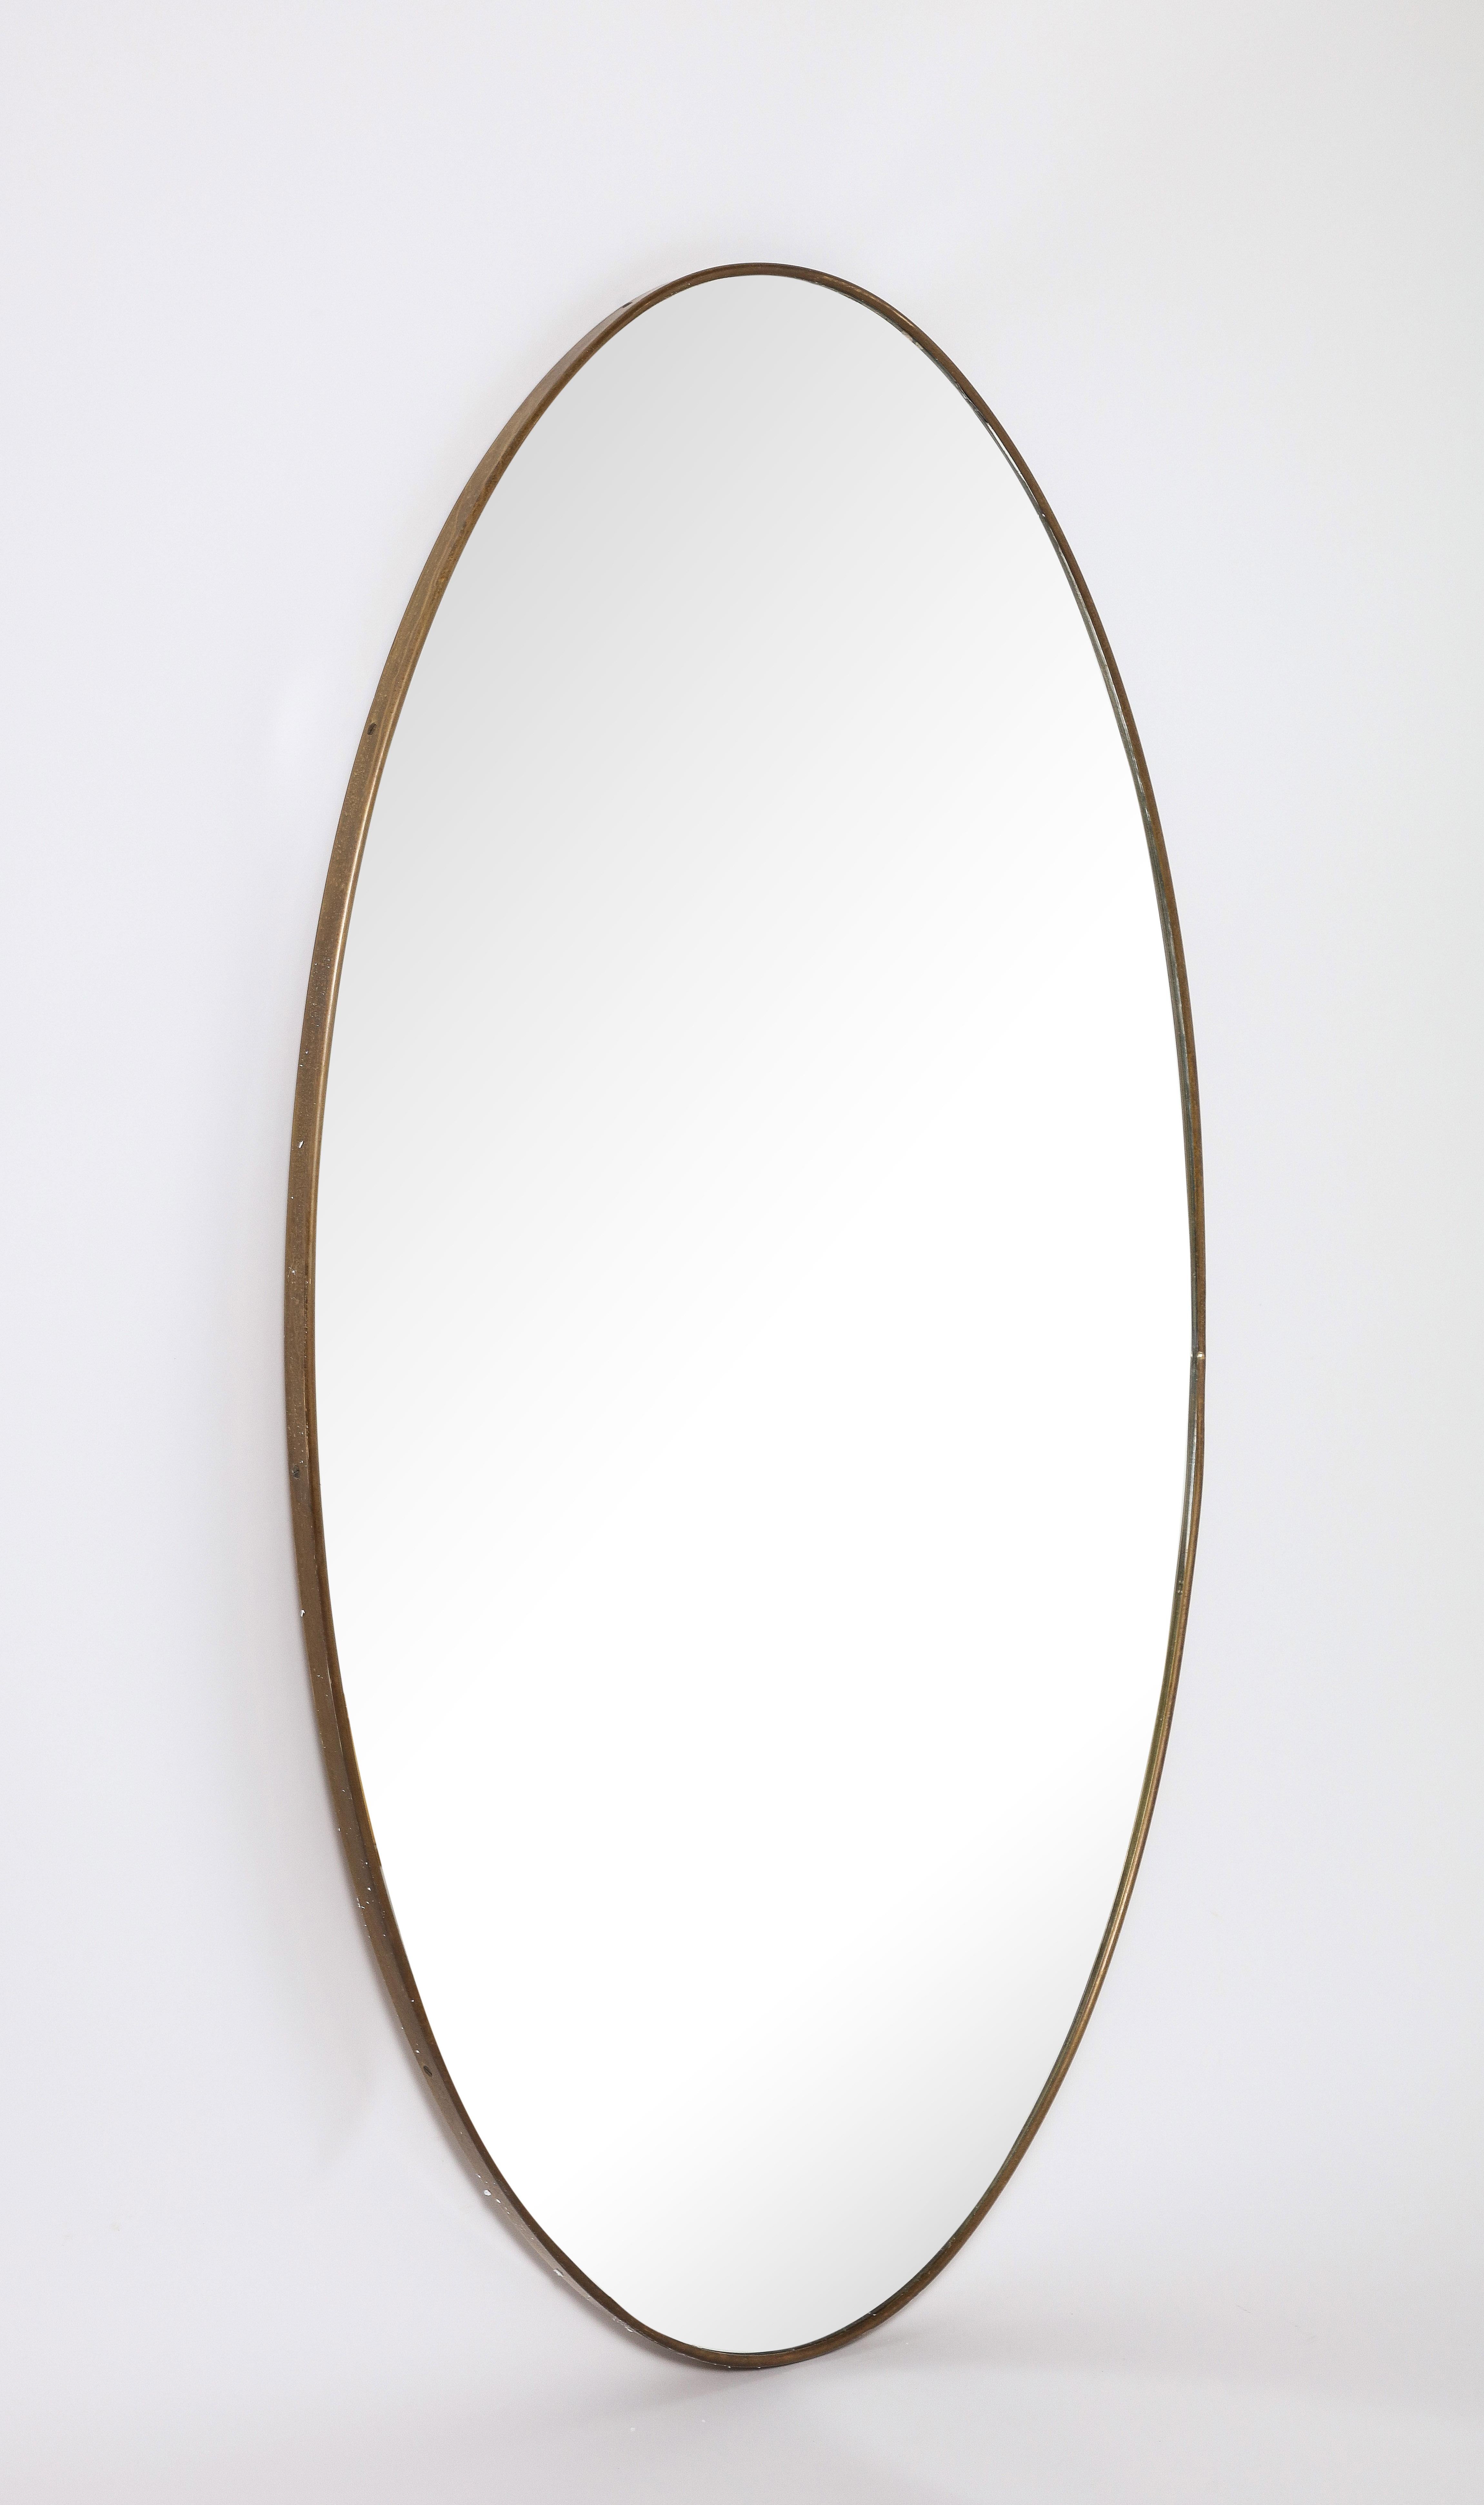 Ovaler Messingspiegel im italienischen Modernismus; eine wunderbare Form, das Messing mit originaler warmer und reicher Patina. Original Spiegelglasplatte. 
Italien, um 1950 
Größe: 49